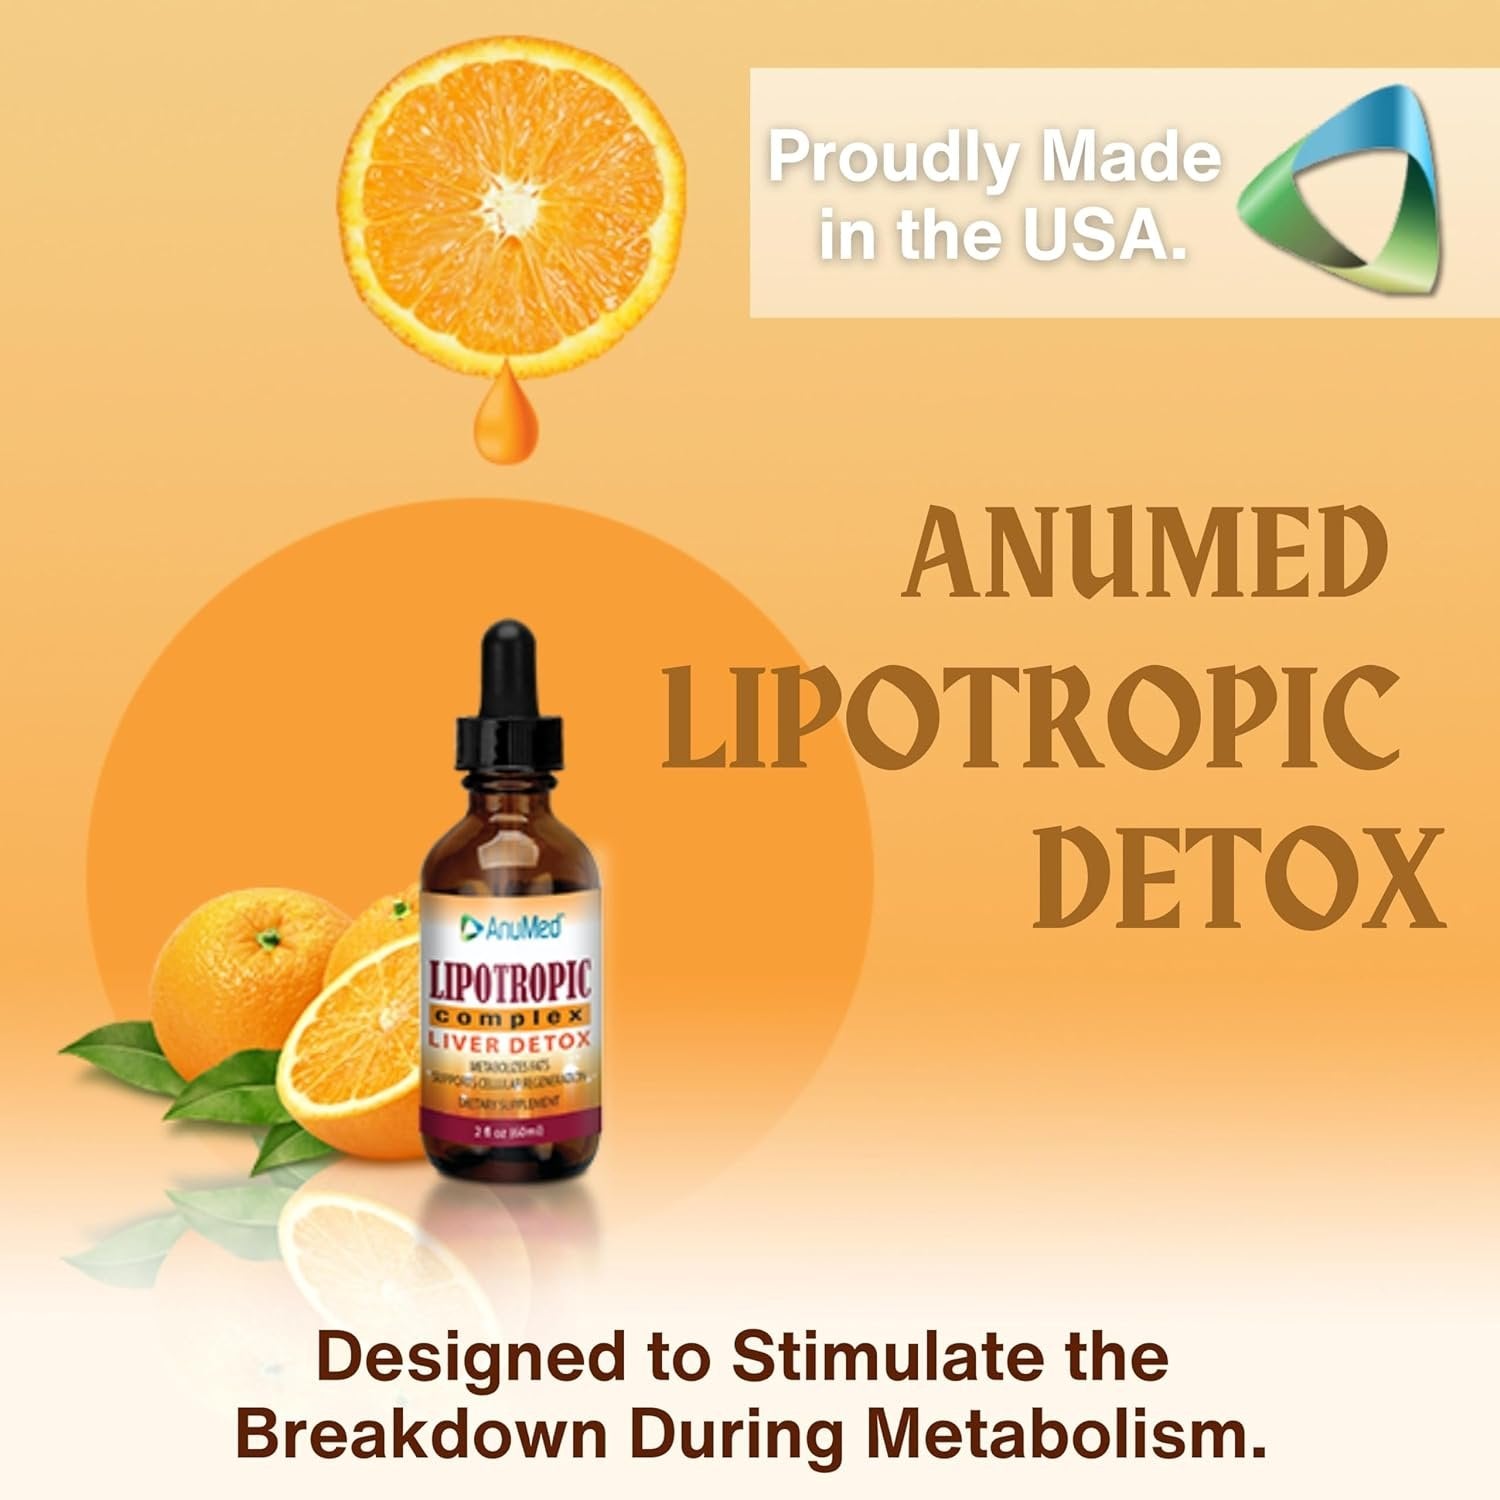 AnuMed International Lipotropic Complex Drops - Liver Detox - Metabolizes Fats - Supports Cellular Regeneration - Vit. B12, B6, Folic Acid - Orange Flavor - 2 oz